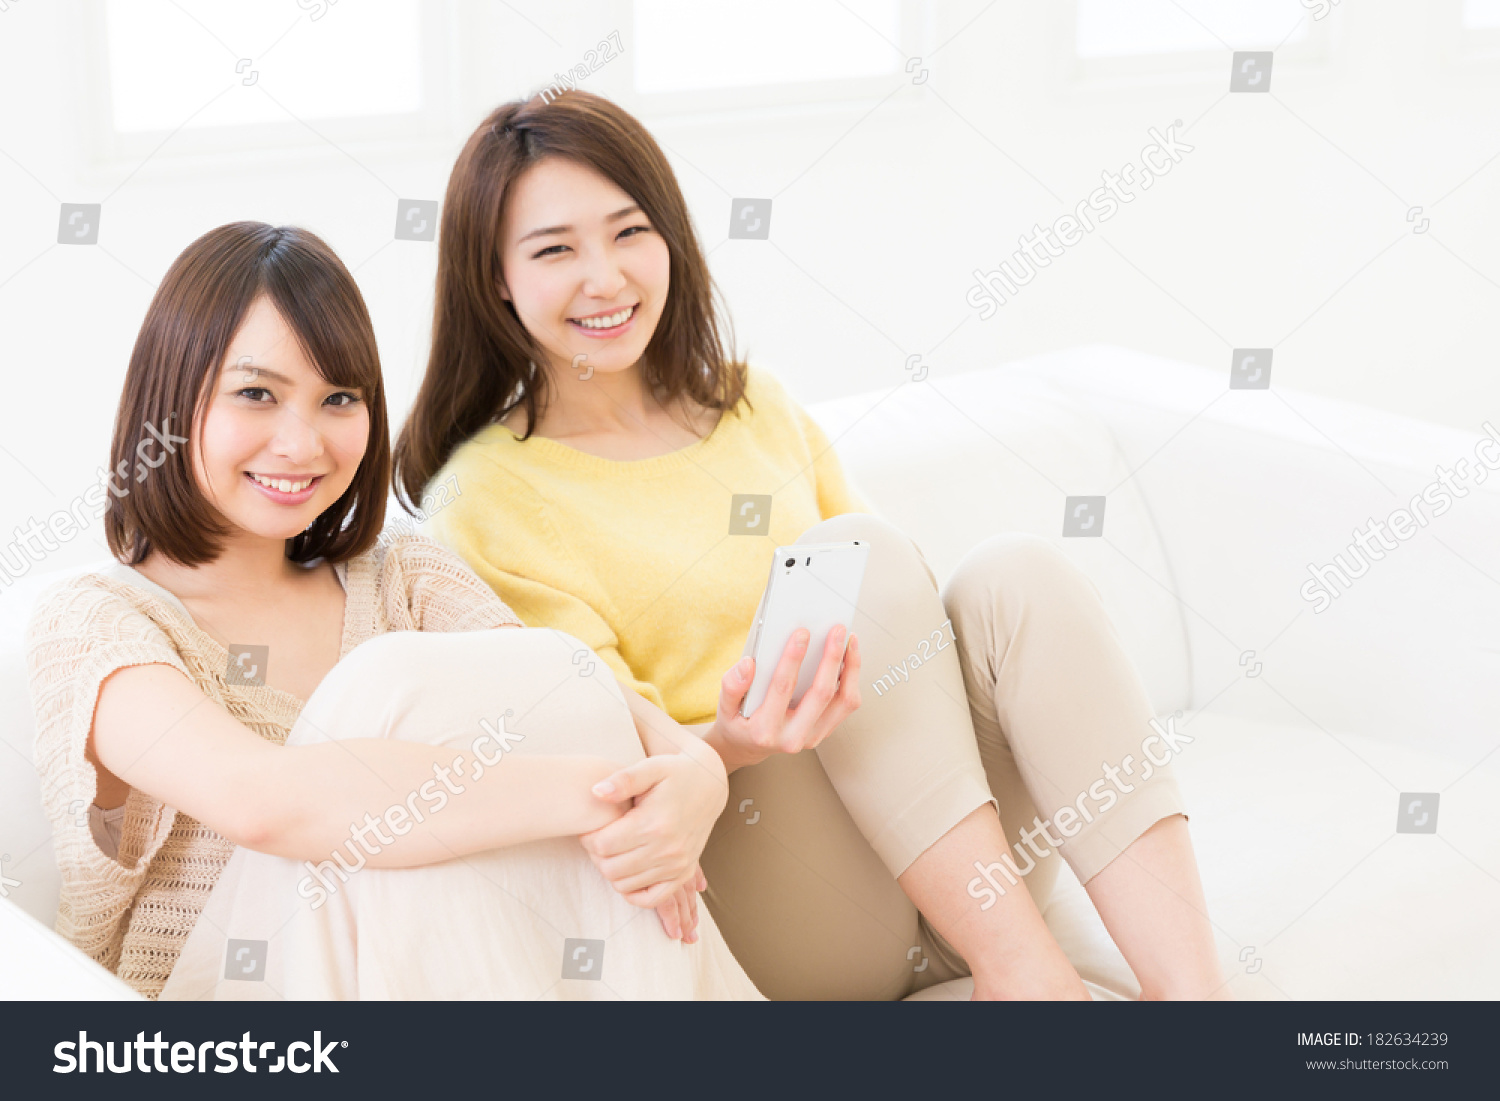 Teen Asian Lesbians